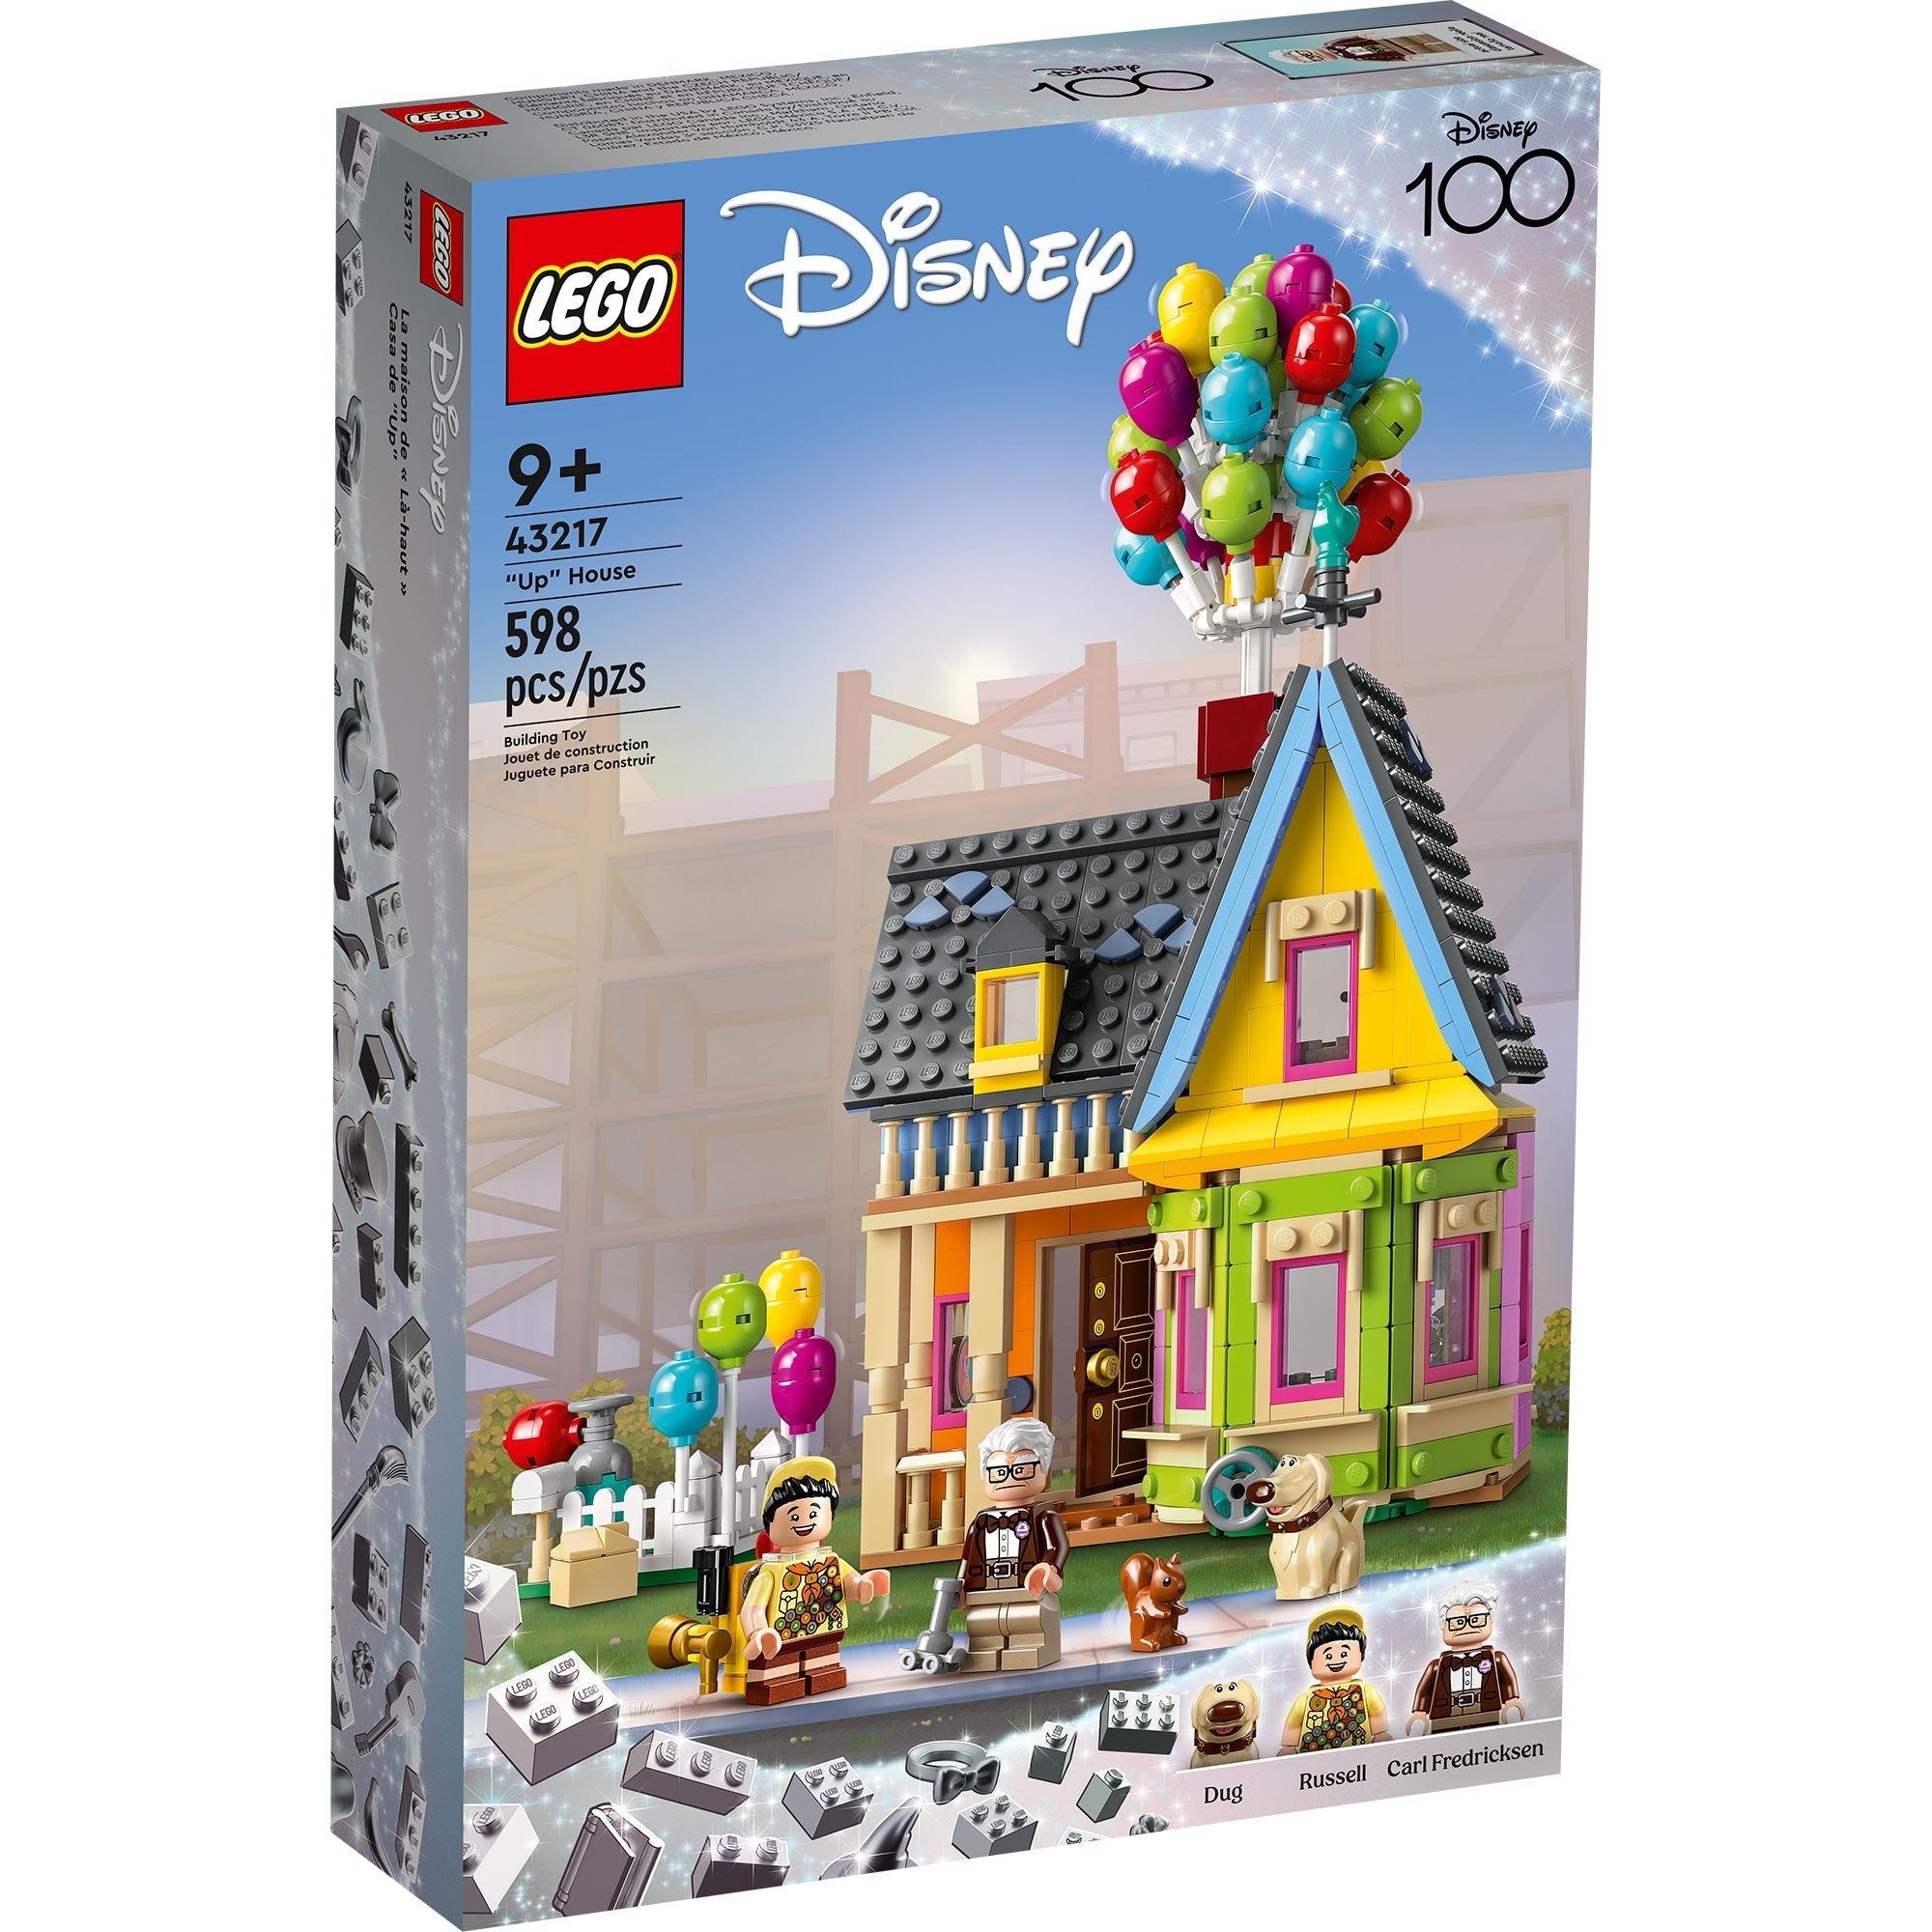 10785 - LEGO® Gabby et la Maison Magique - La cuisine fantastique